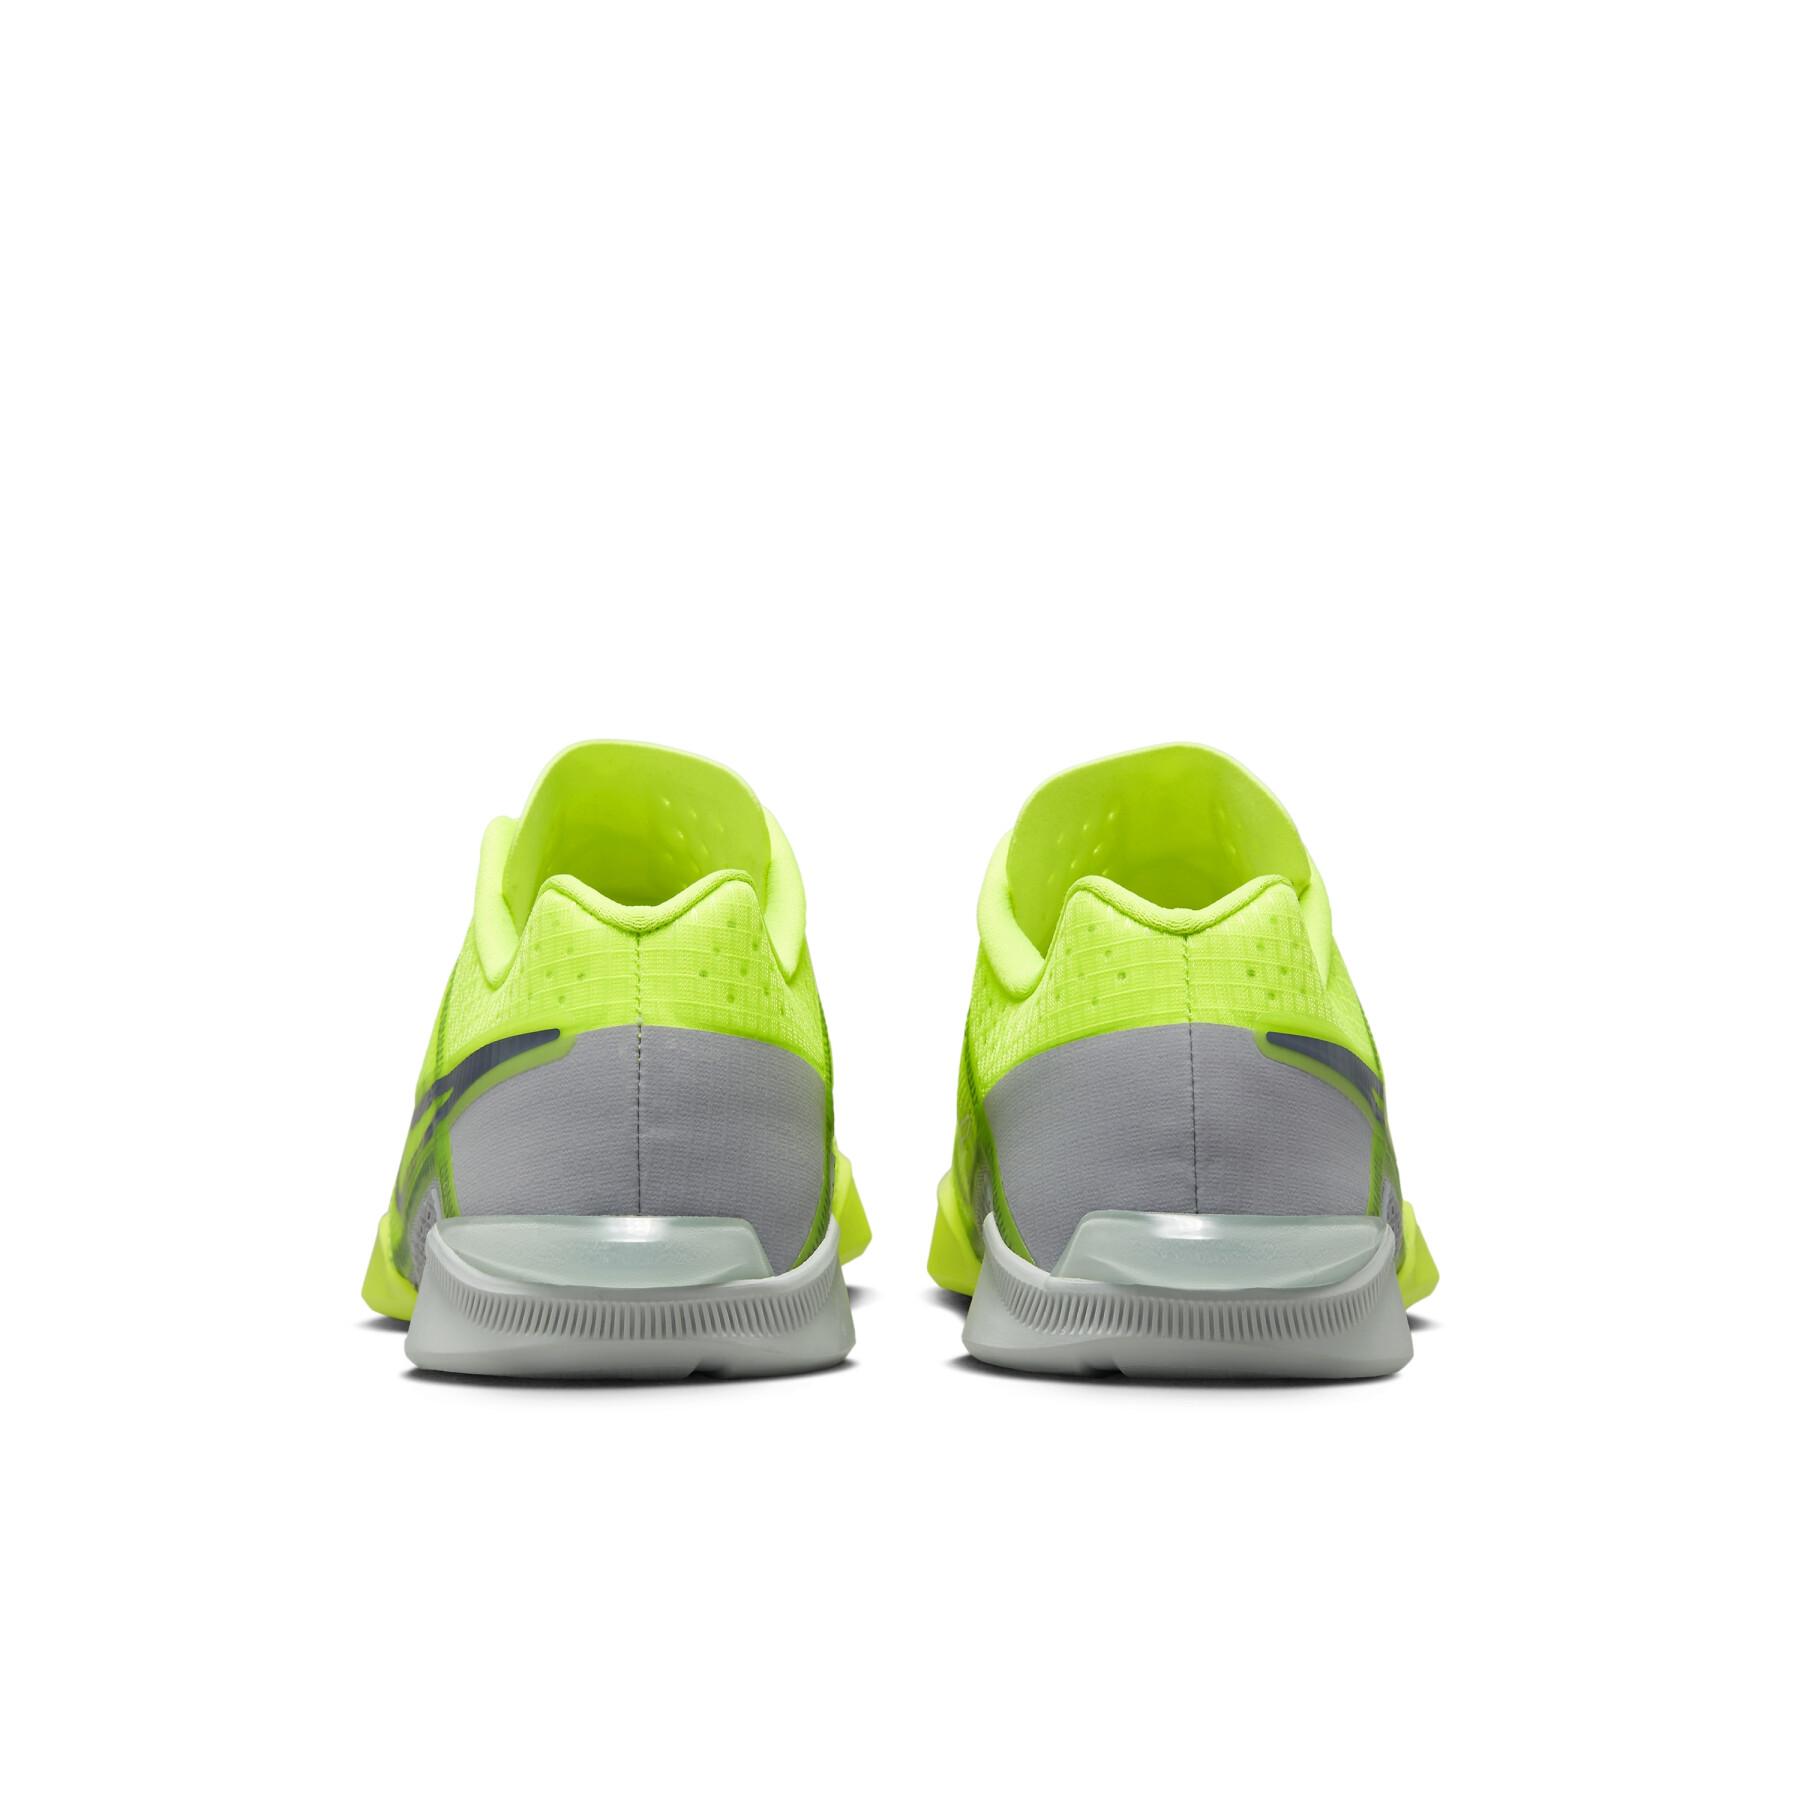 Schuhe indoor Nike Zoom Metcon Turbo 2